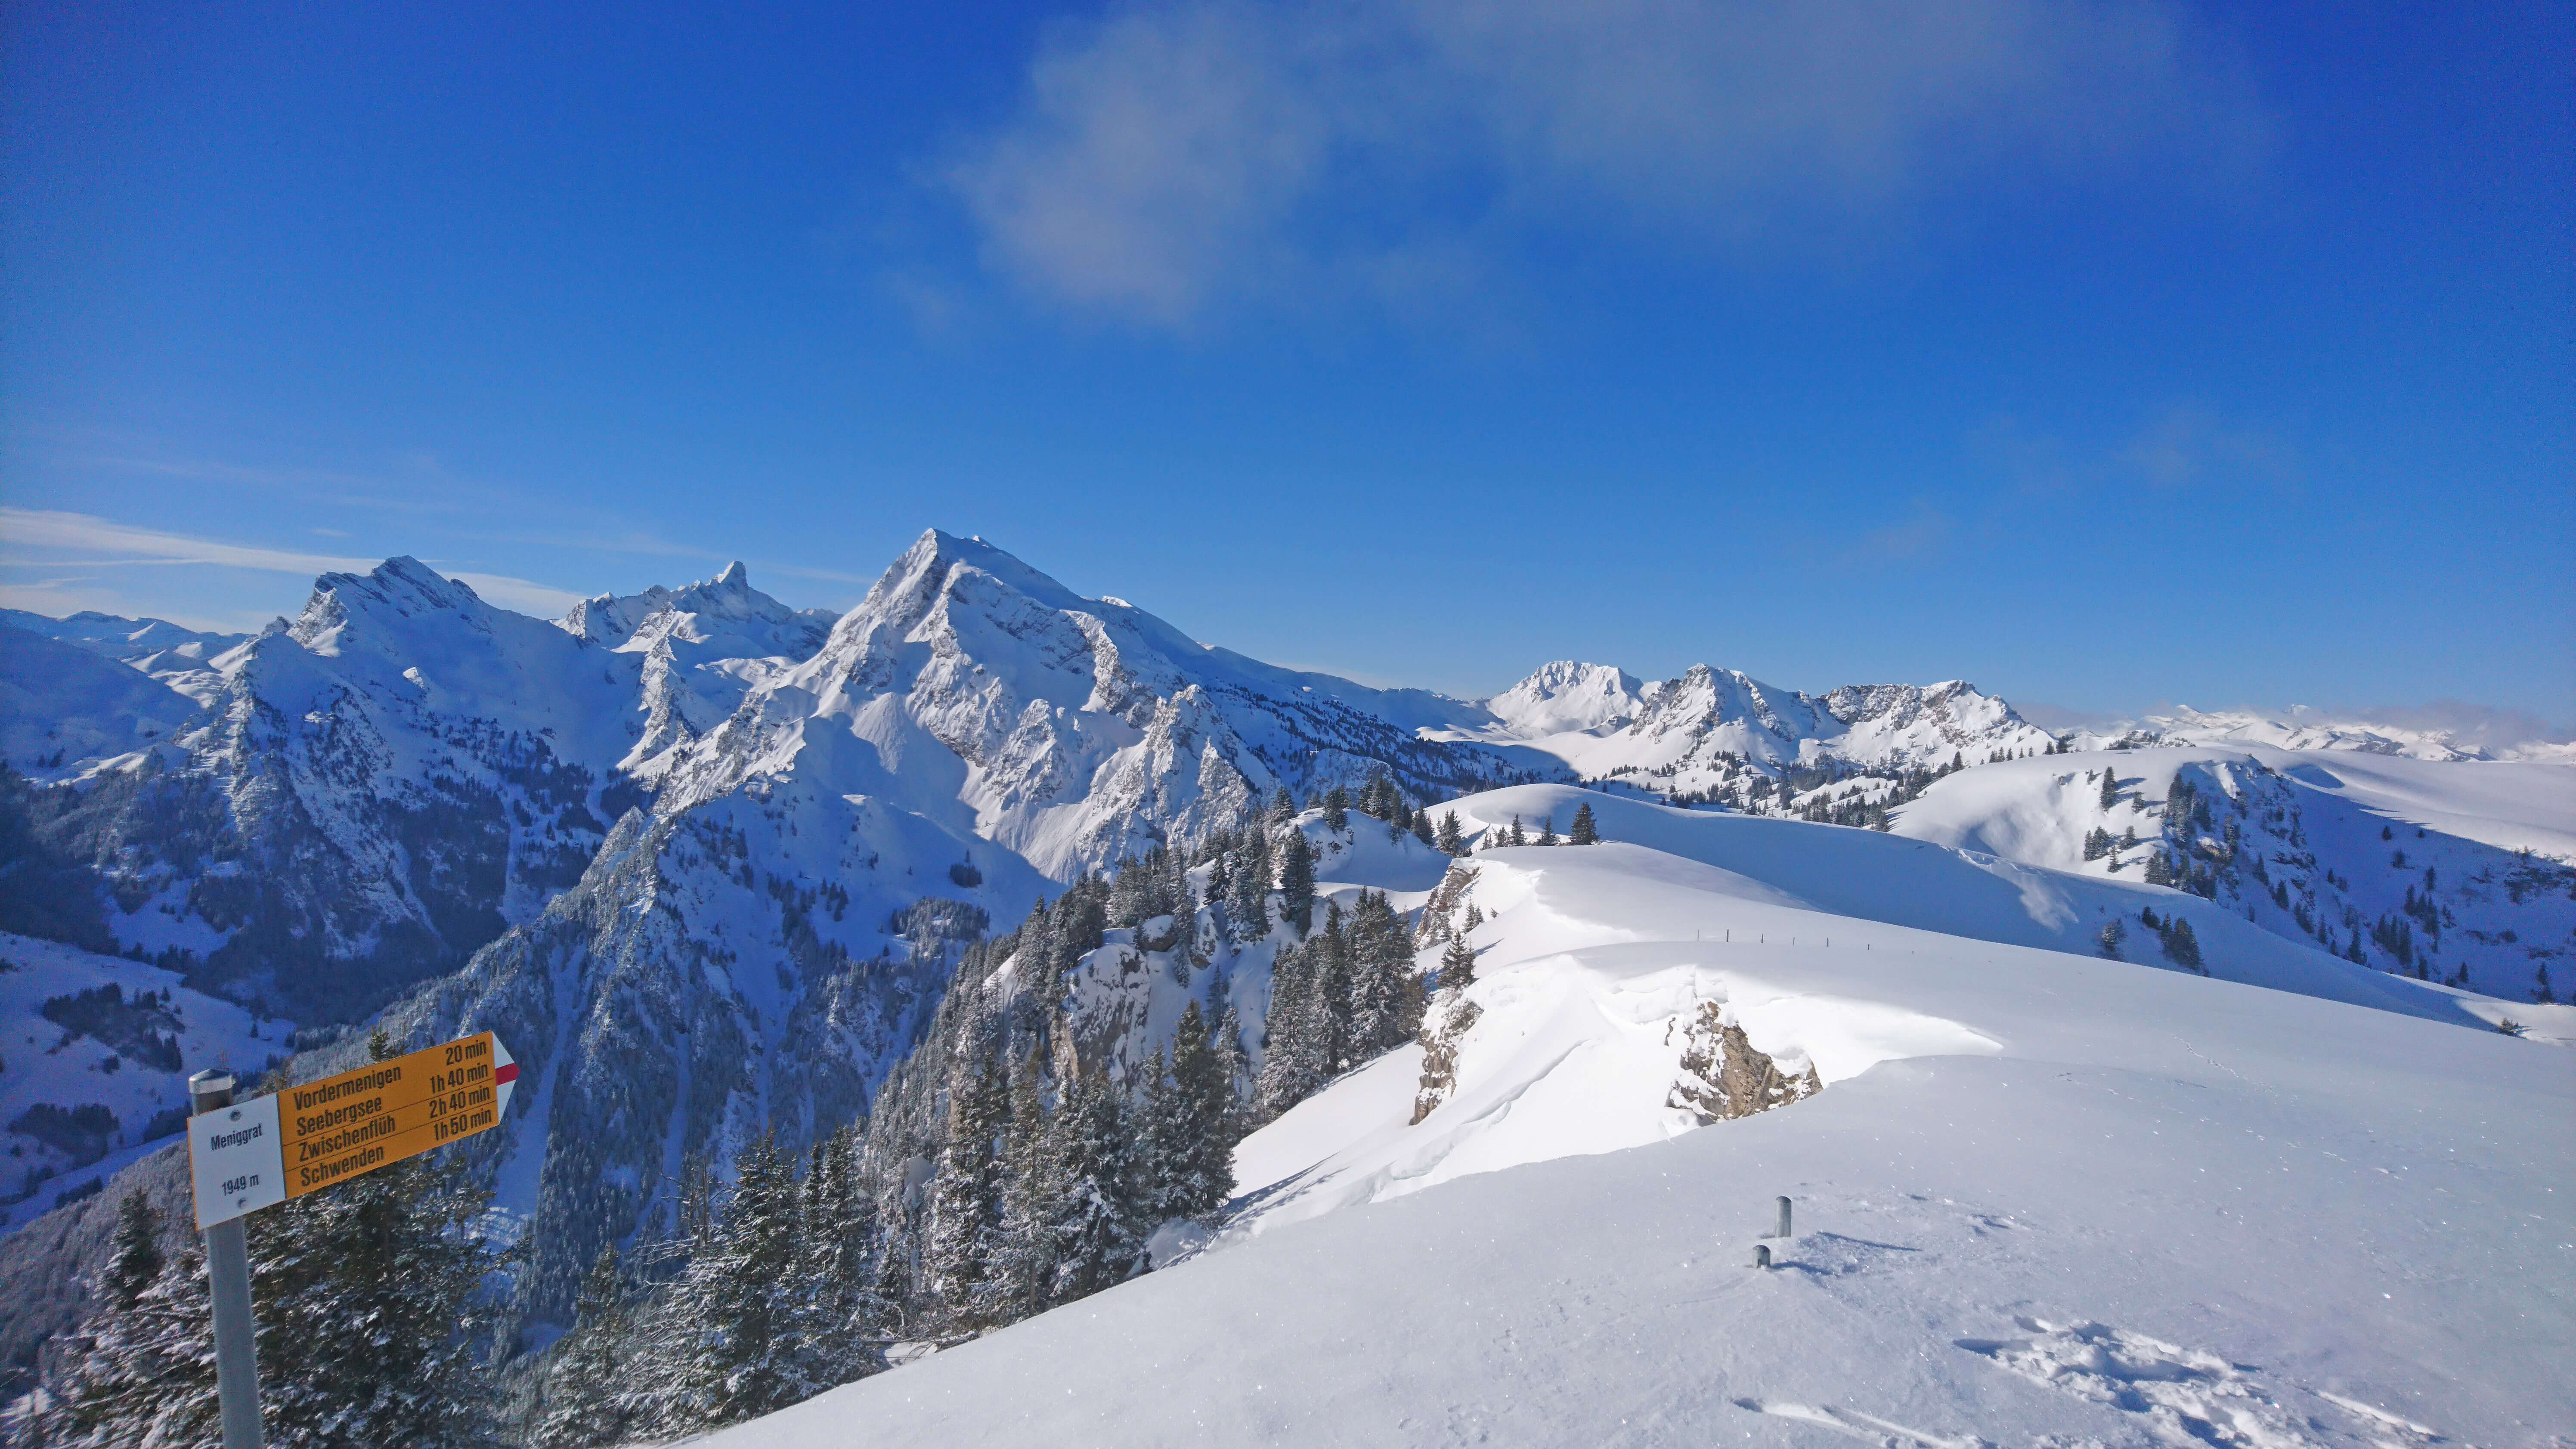 Unforgettable ski tour in snowy winter landscape on the Meniggrat